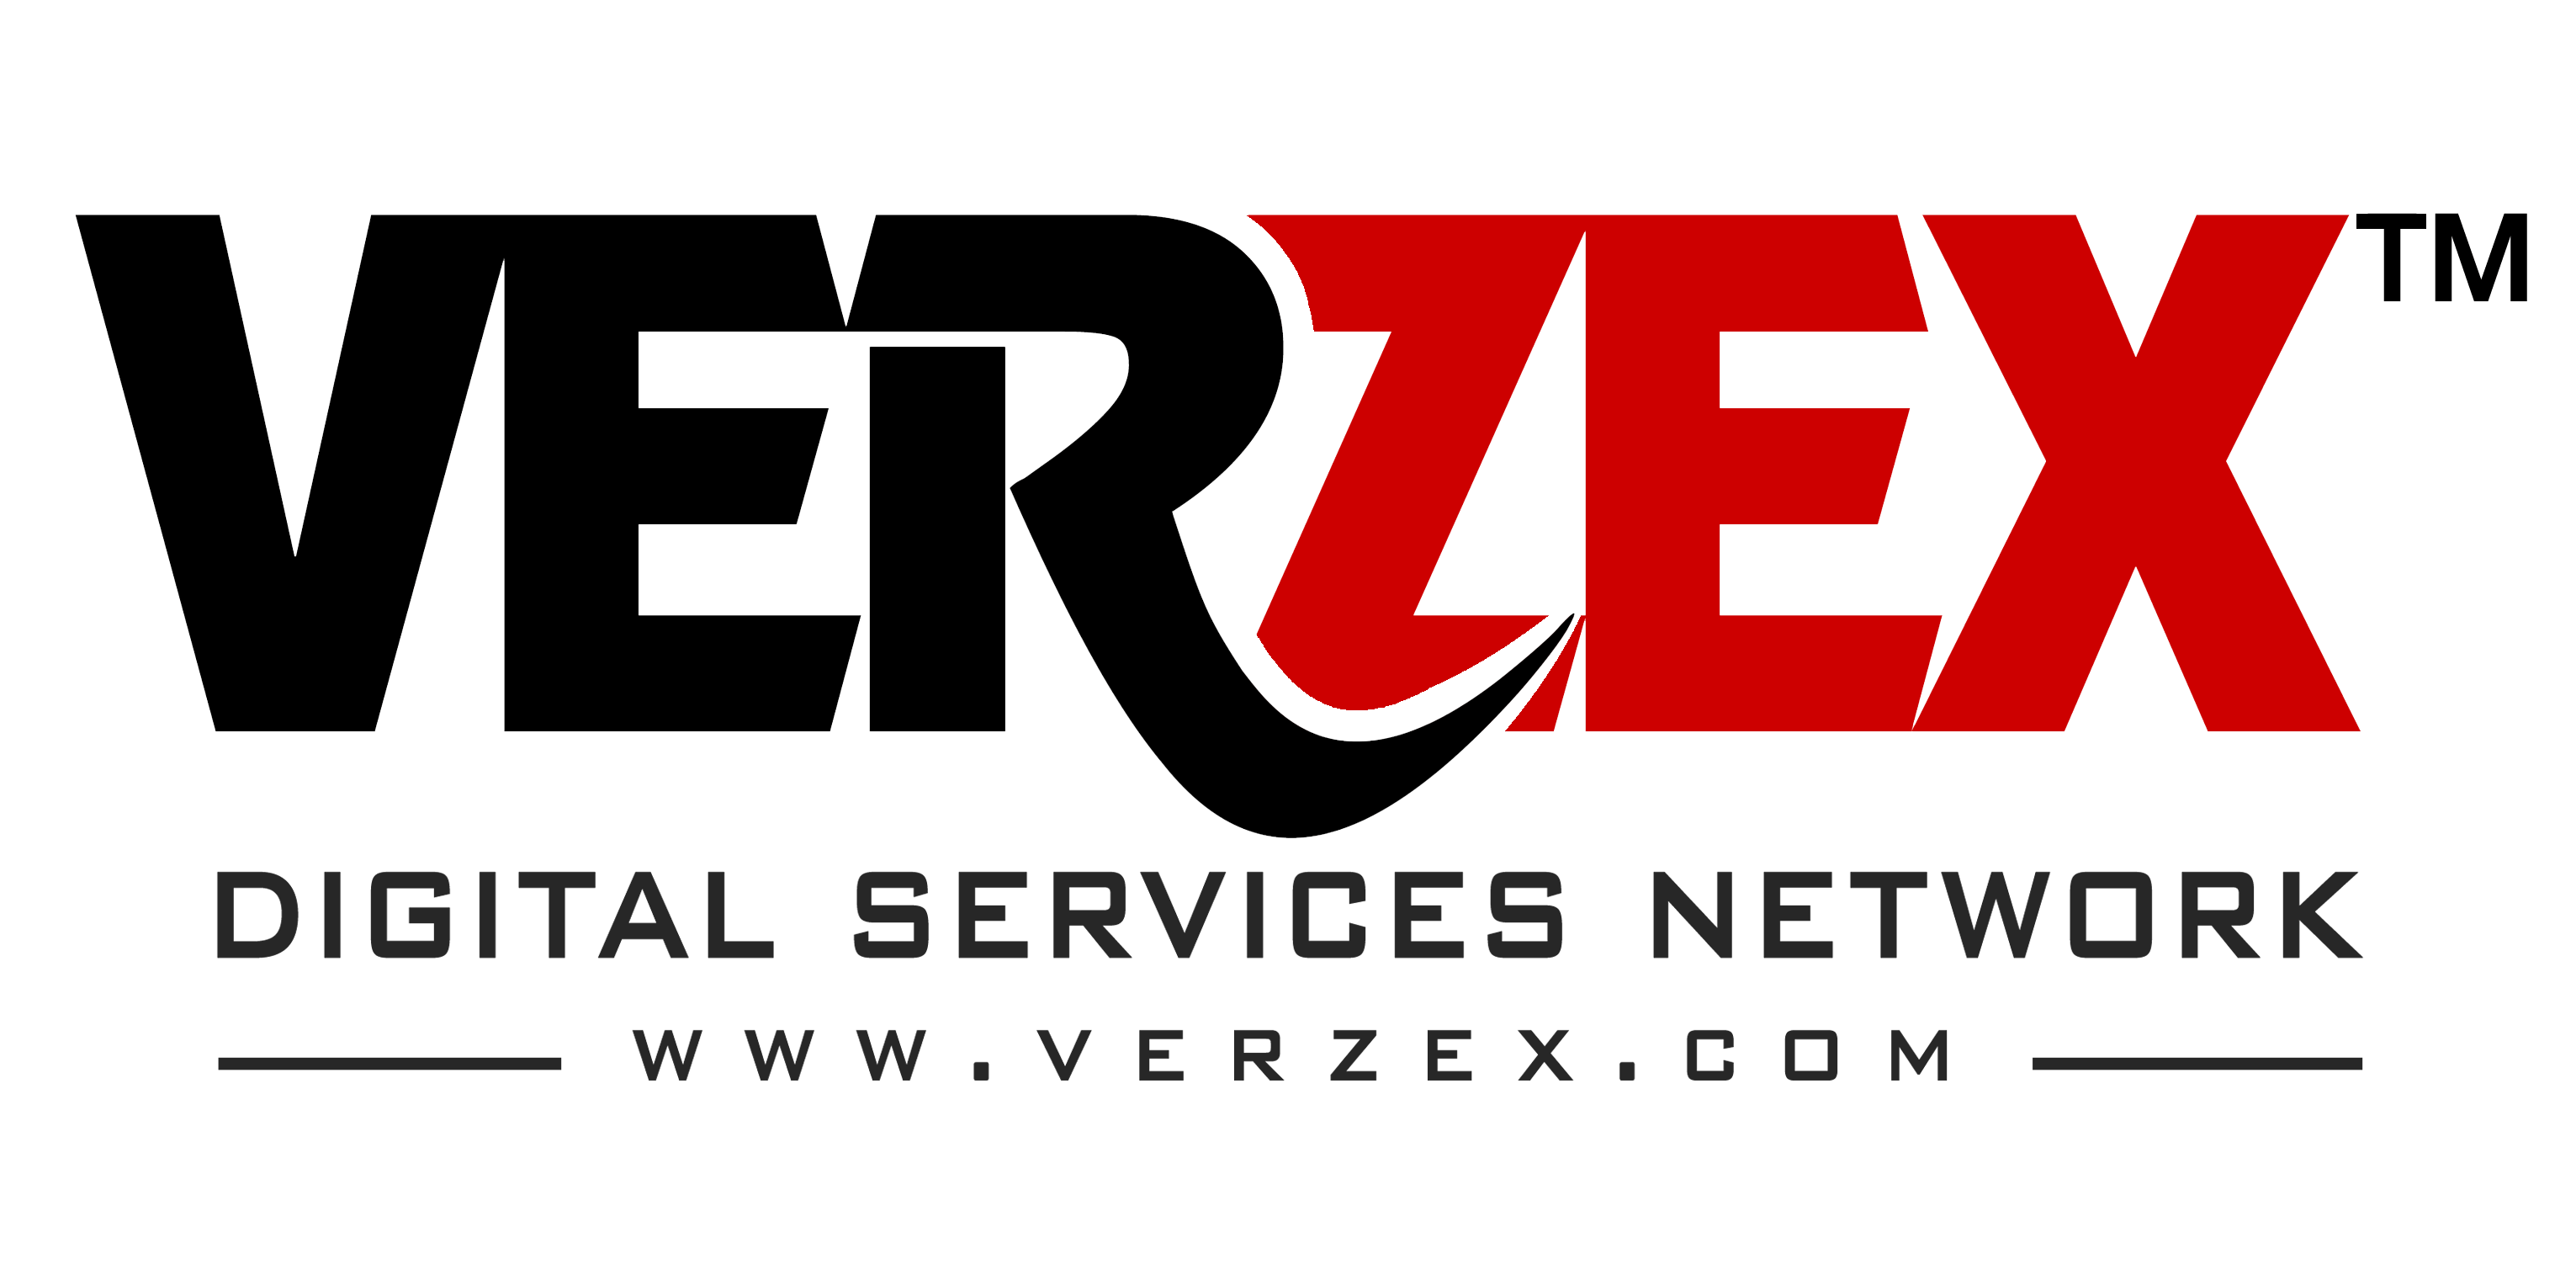 VERZEX™ – Digital Services Network